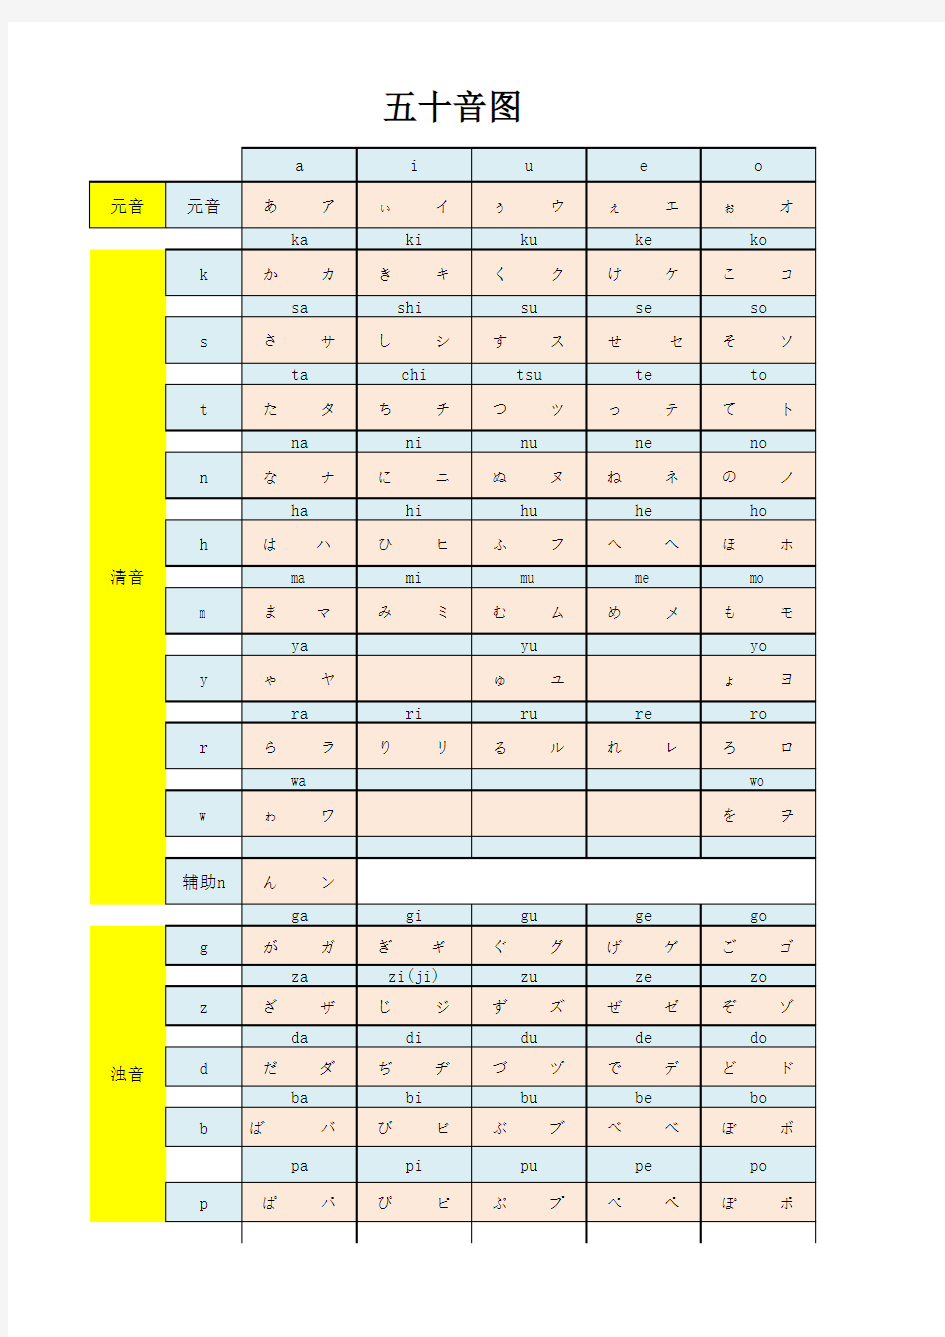 日语五十音图(阅读打印版)